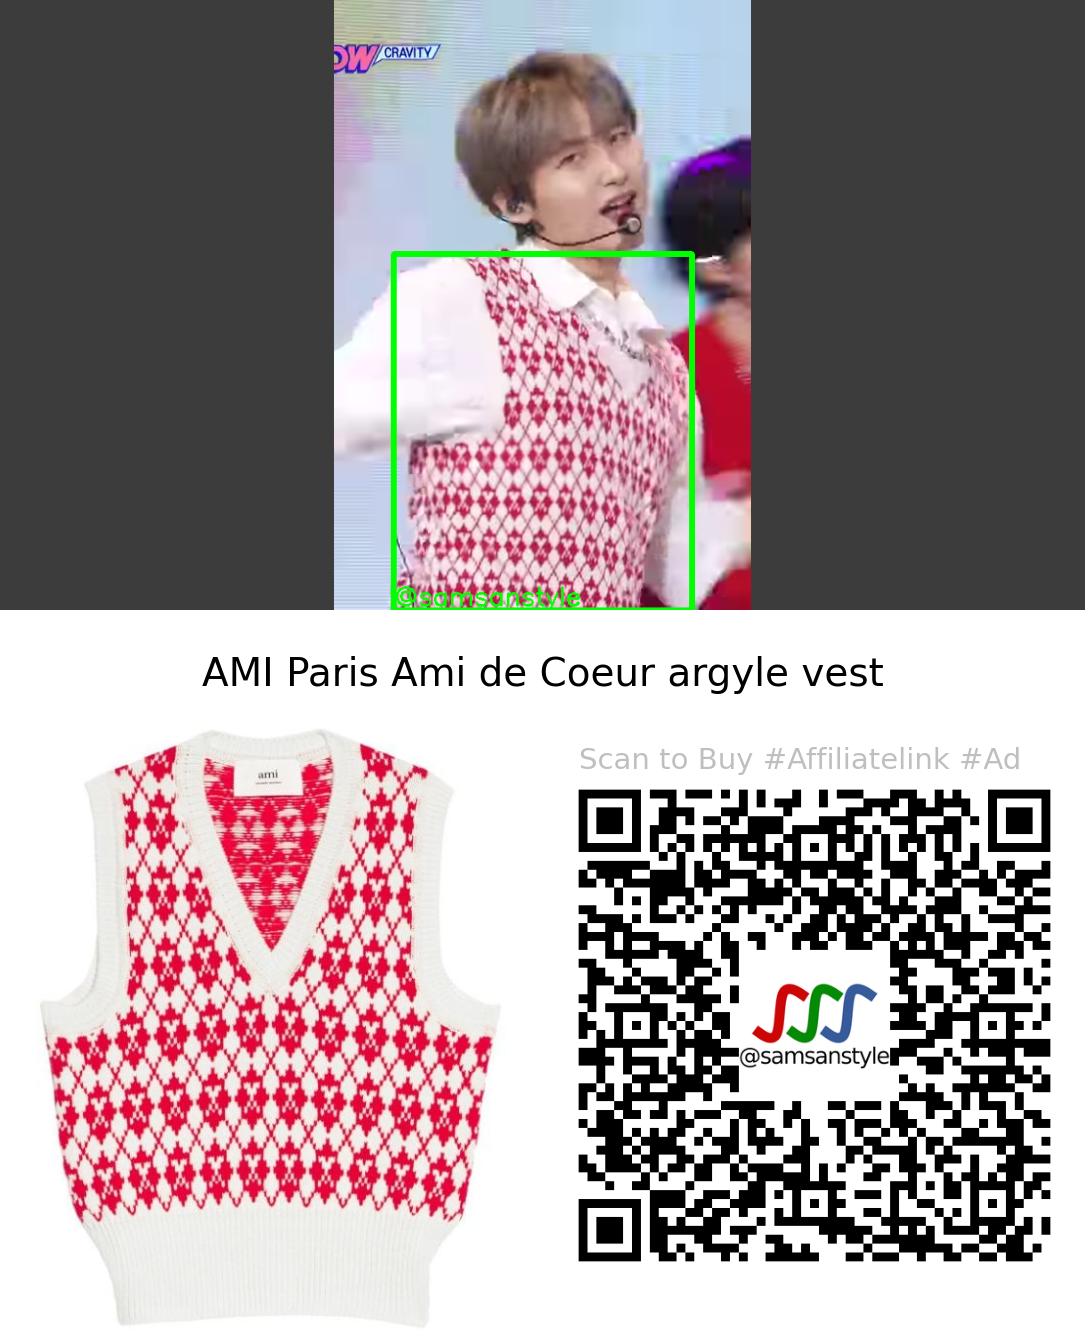 CRAVITY Woobin | SBS MTV The Show | AMI Paris Ami de Coeur argyle vest